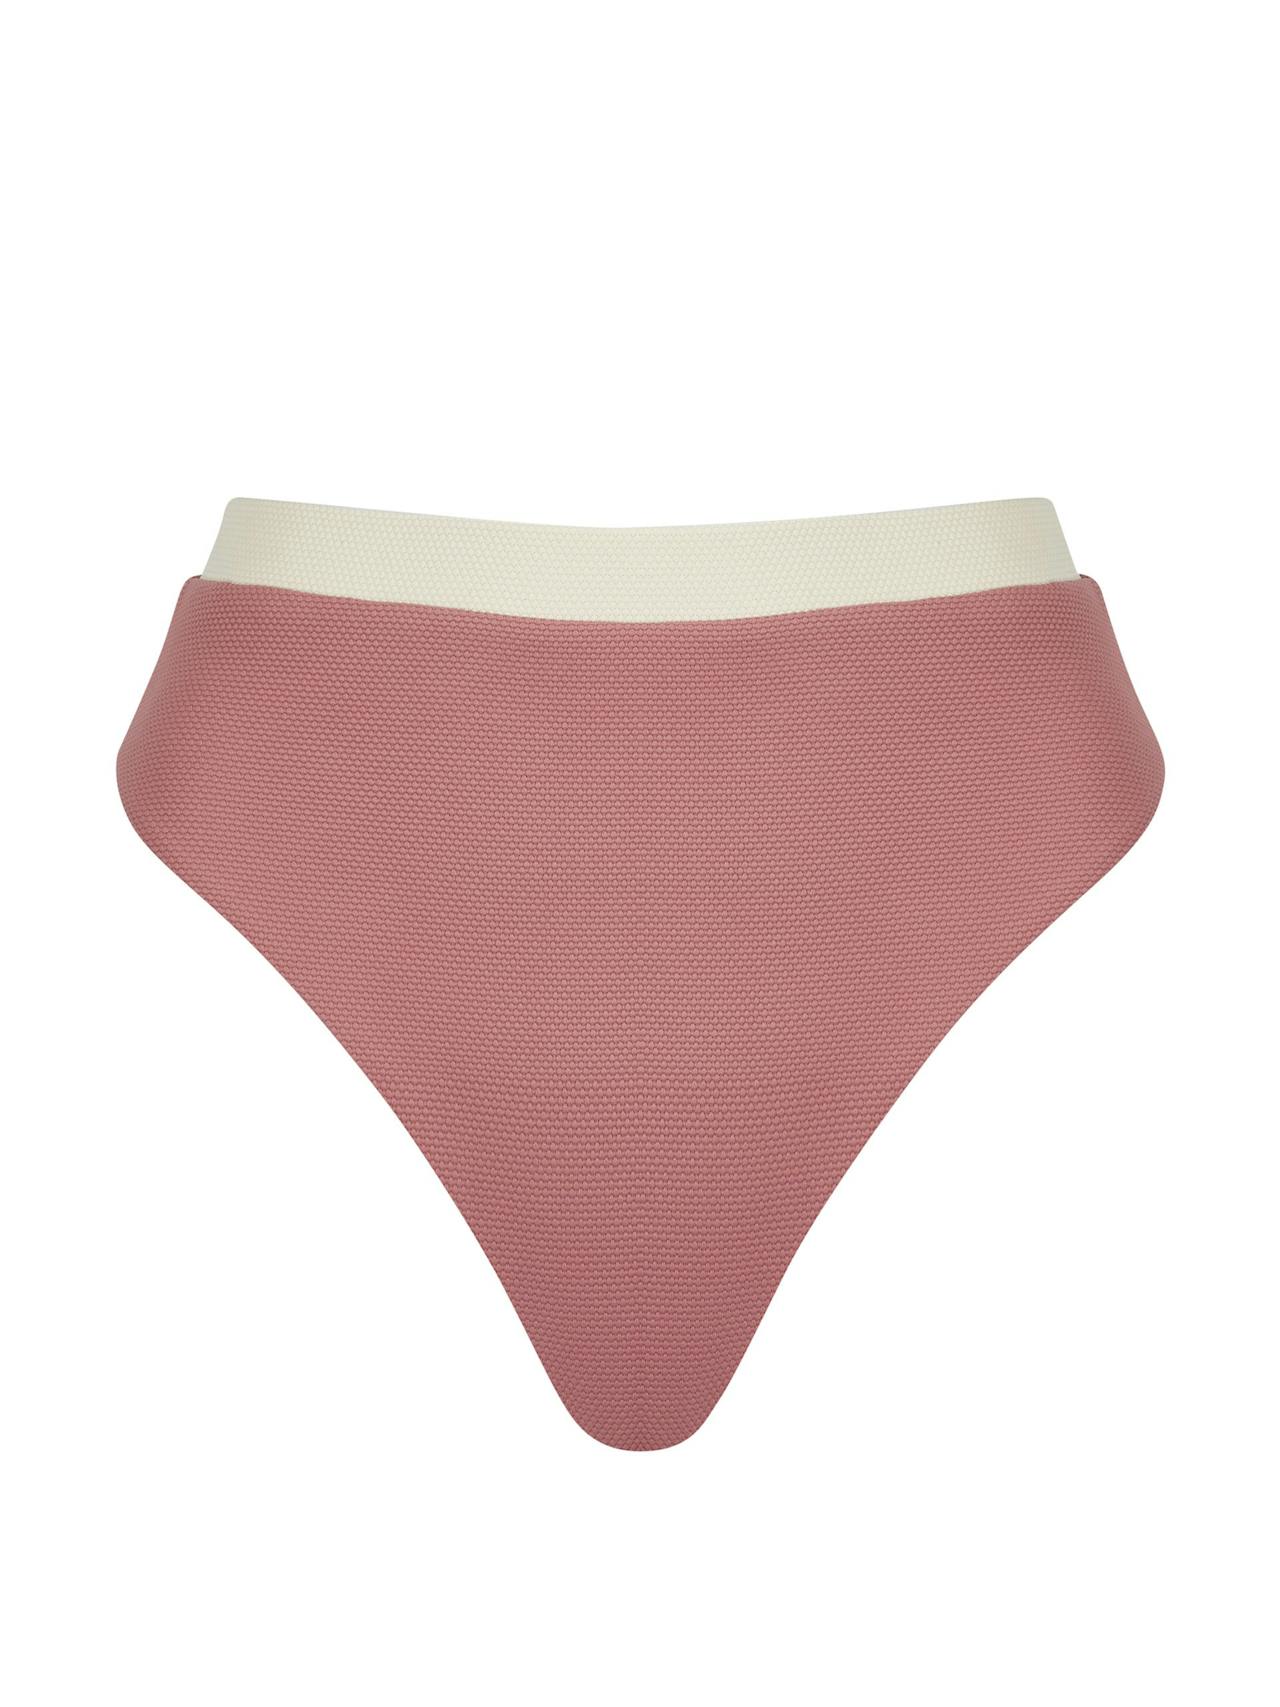 The Claude bikini bottom in rose and ecru